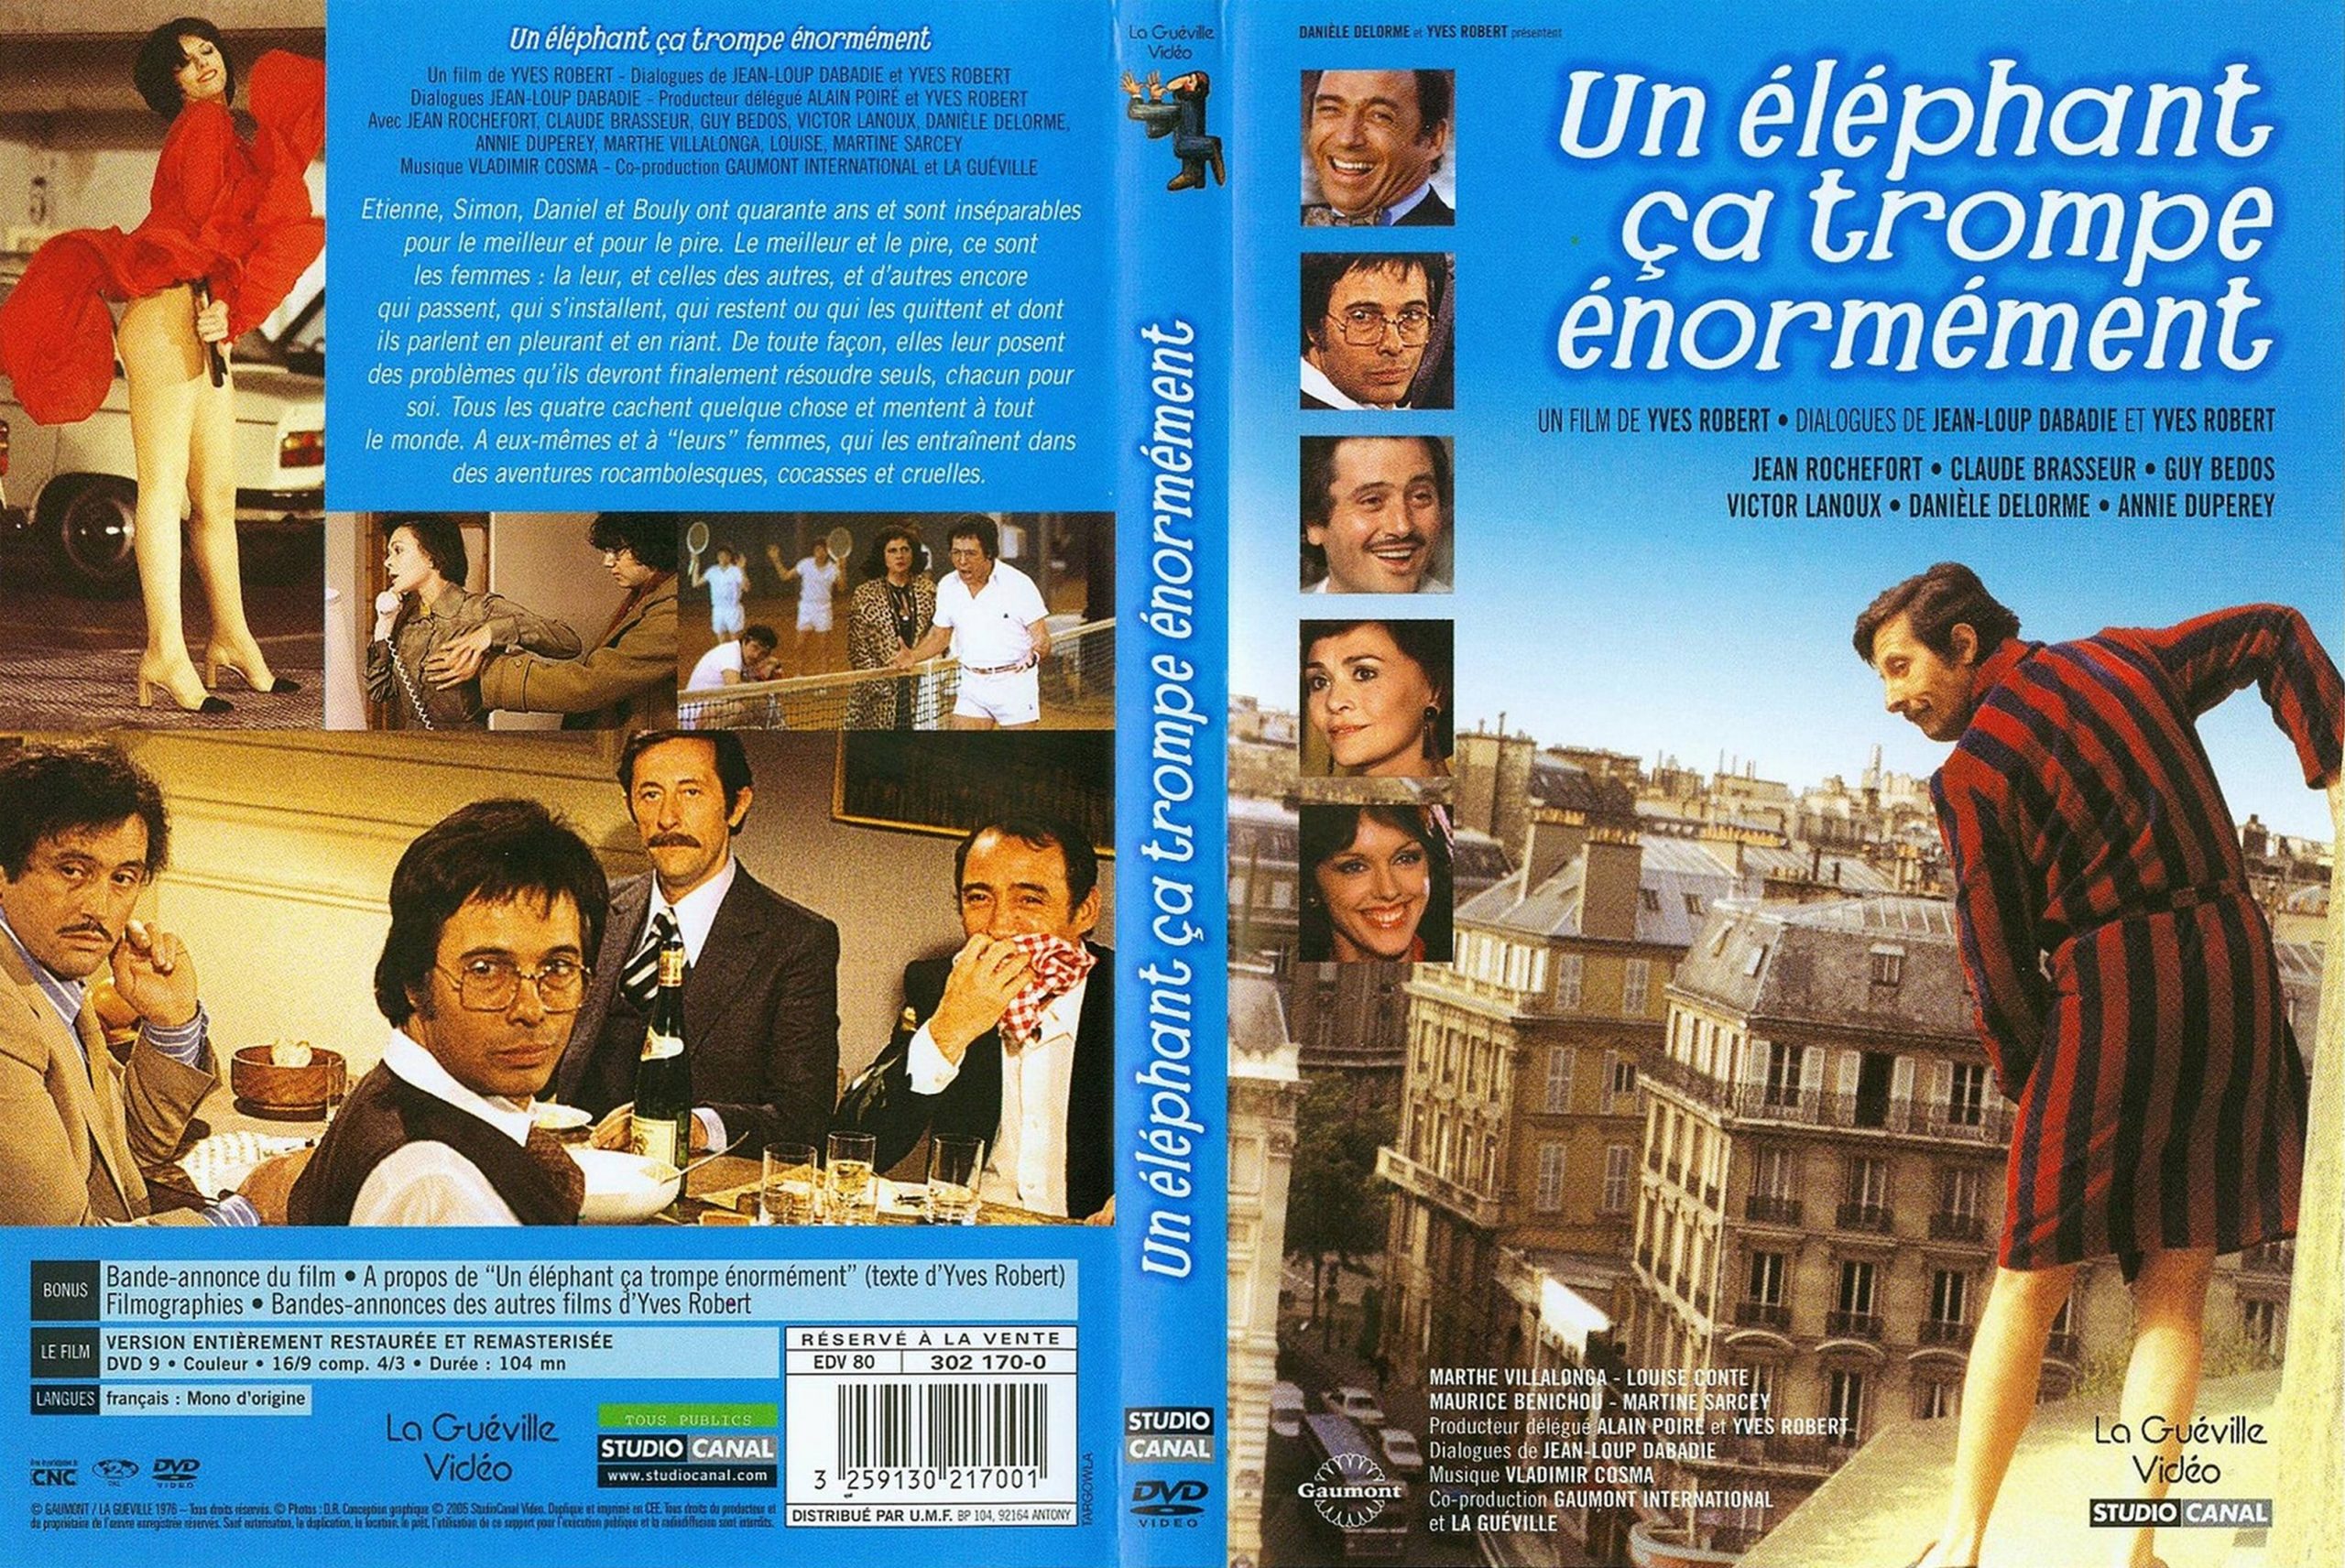 Jaquette Dvd De Un Éléphant Ca Trompe Énormément - Cinéma tout Un Éléphant Ça Trompe Énormément Musique